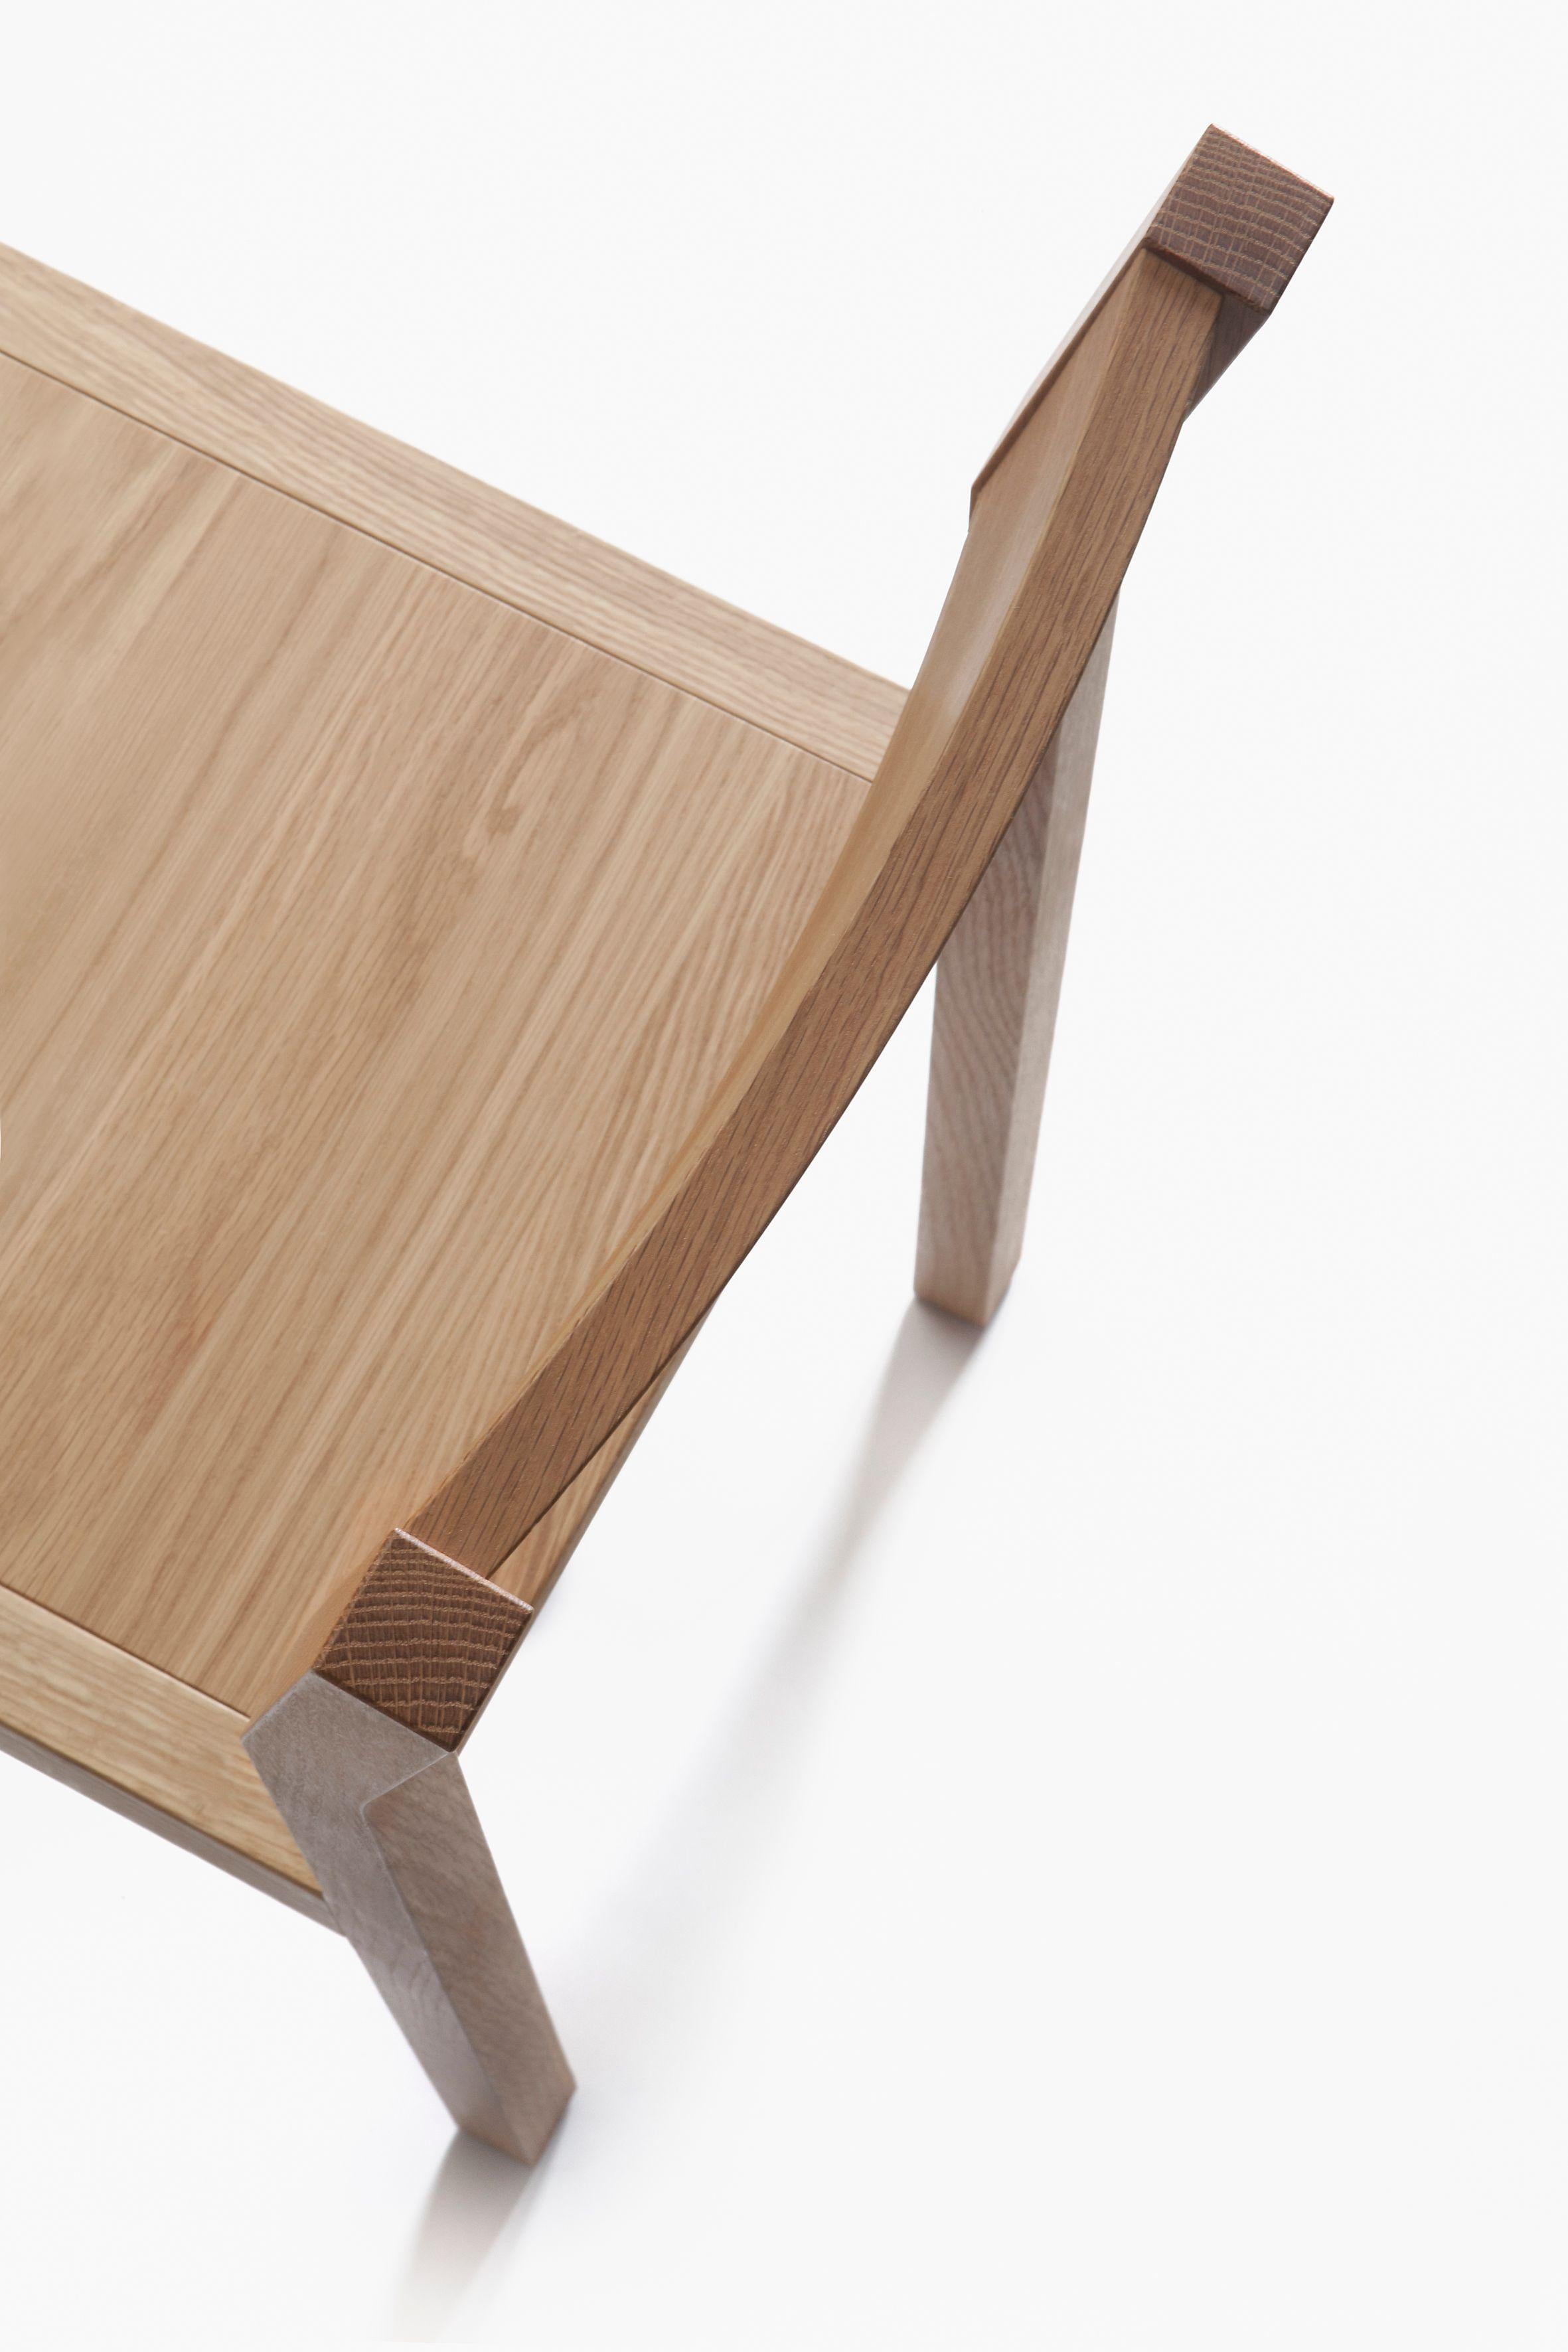 Scandinavian Modern Seminar KVT1 Solid Oak Chair by Kari Virtanen For Sale